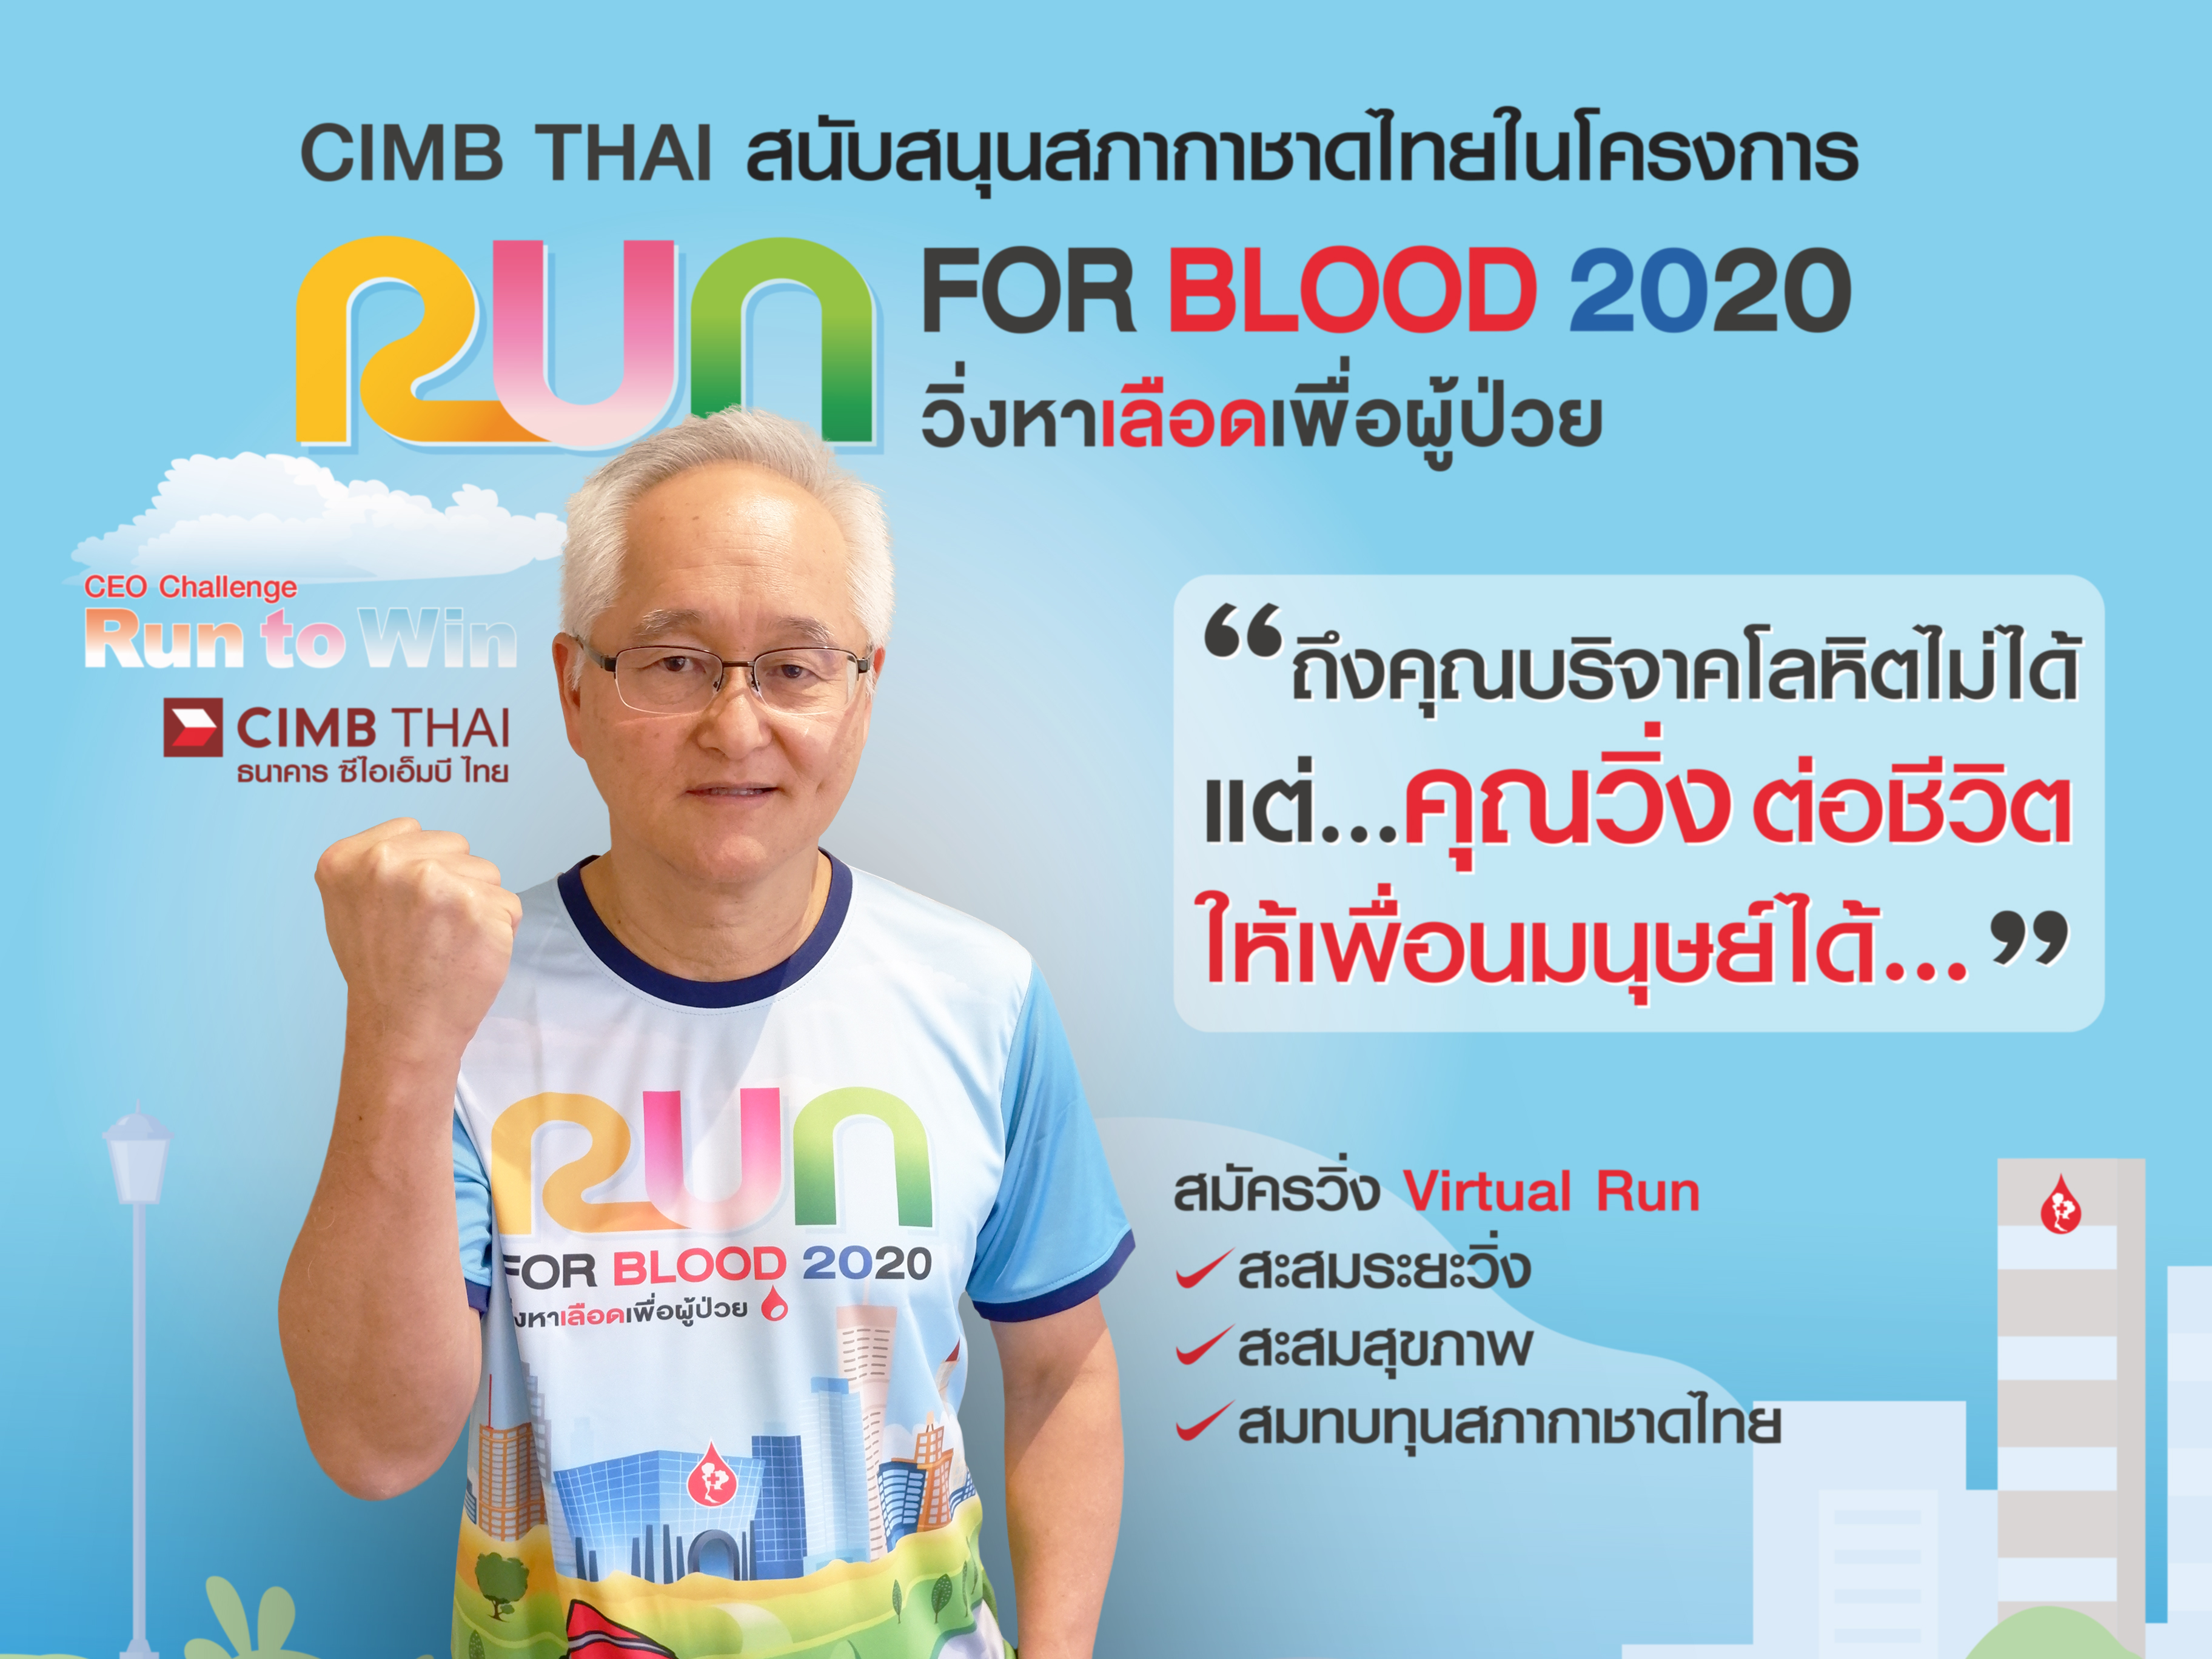 ธนาคาร ซีไอเอ็มบี ไทย ชวนคนแบงก์สมัครวิ่ง Virtual Run ในโครงการ 'RUN FOR BLOOD 2020 วิ่งหาเลือดเพื่อผู้ป่วย ระดมทุนช่วยสภากาชาดไทย